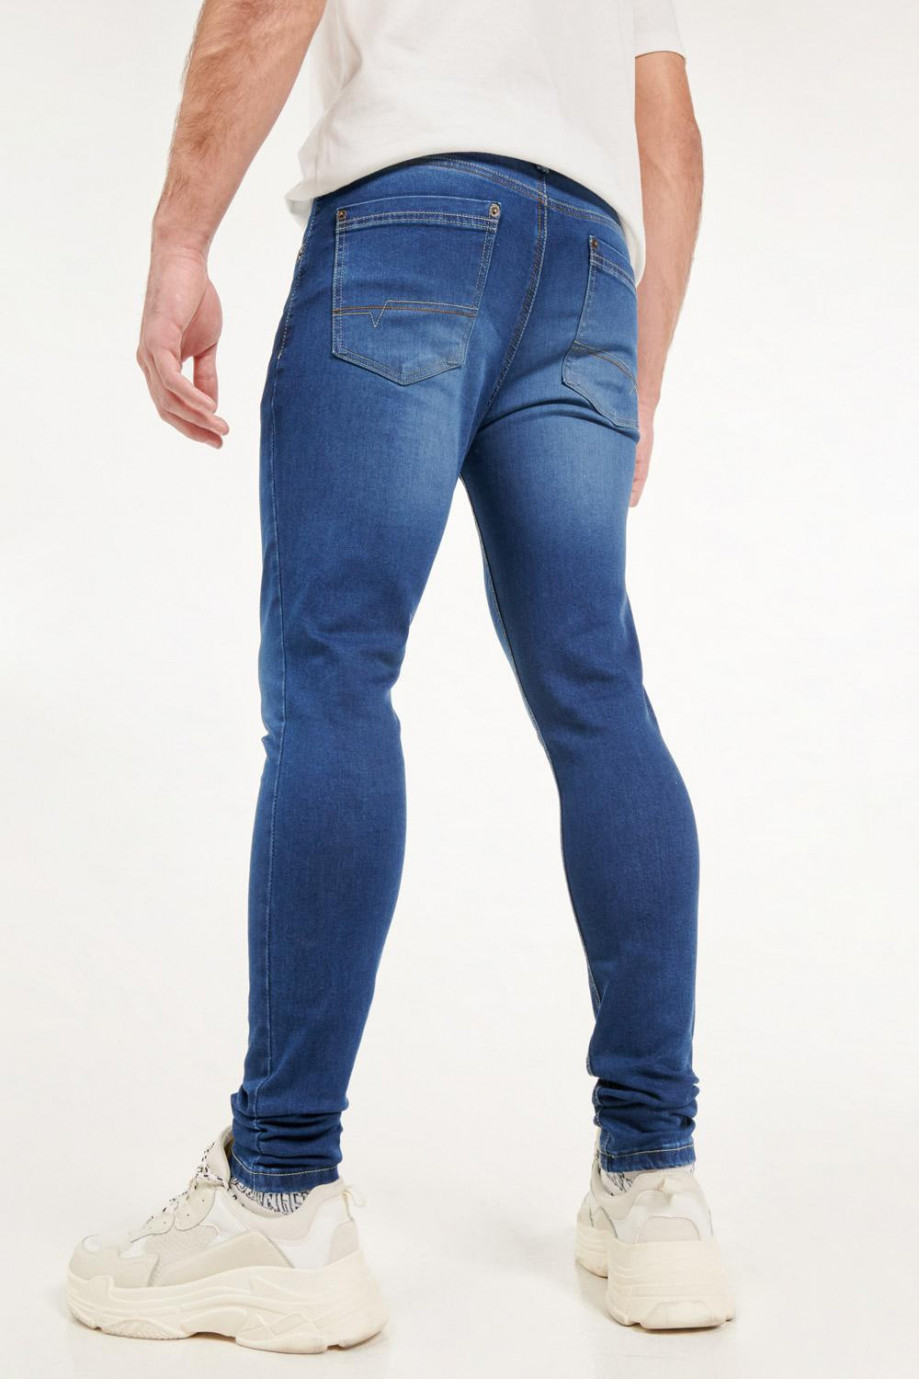 Jean azul oscuro skinny fit tiro bajo con costuras en contraste